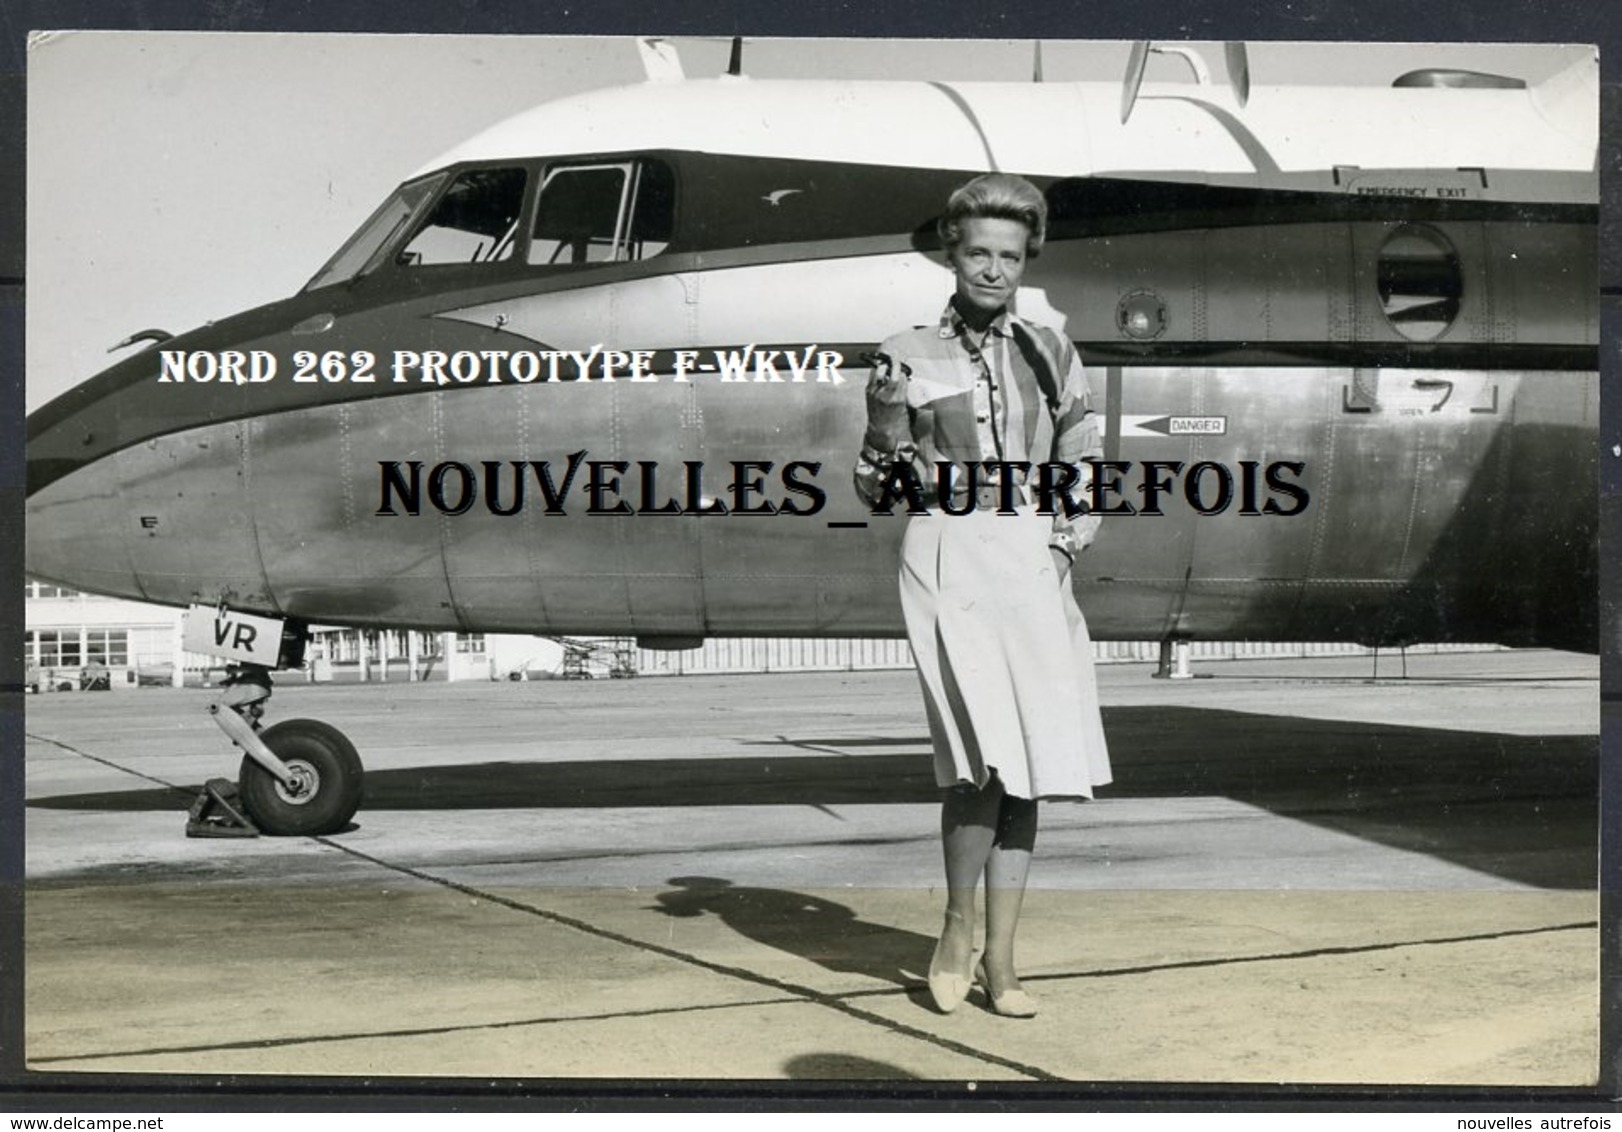 2 PHOTOS ORIGINALES DE JACQUELINE AURIOL ( PERPIGNAN 1967) - NORD 262 F-WKVR PROTOTYPE - DOCUMENTS RARES. - Célébrités